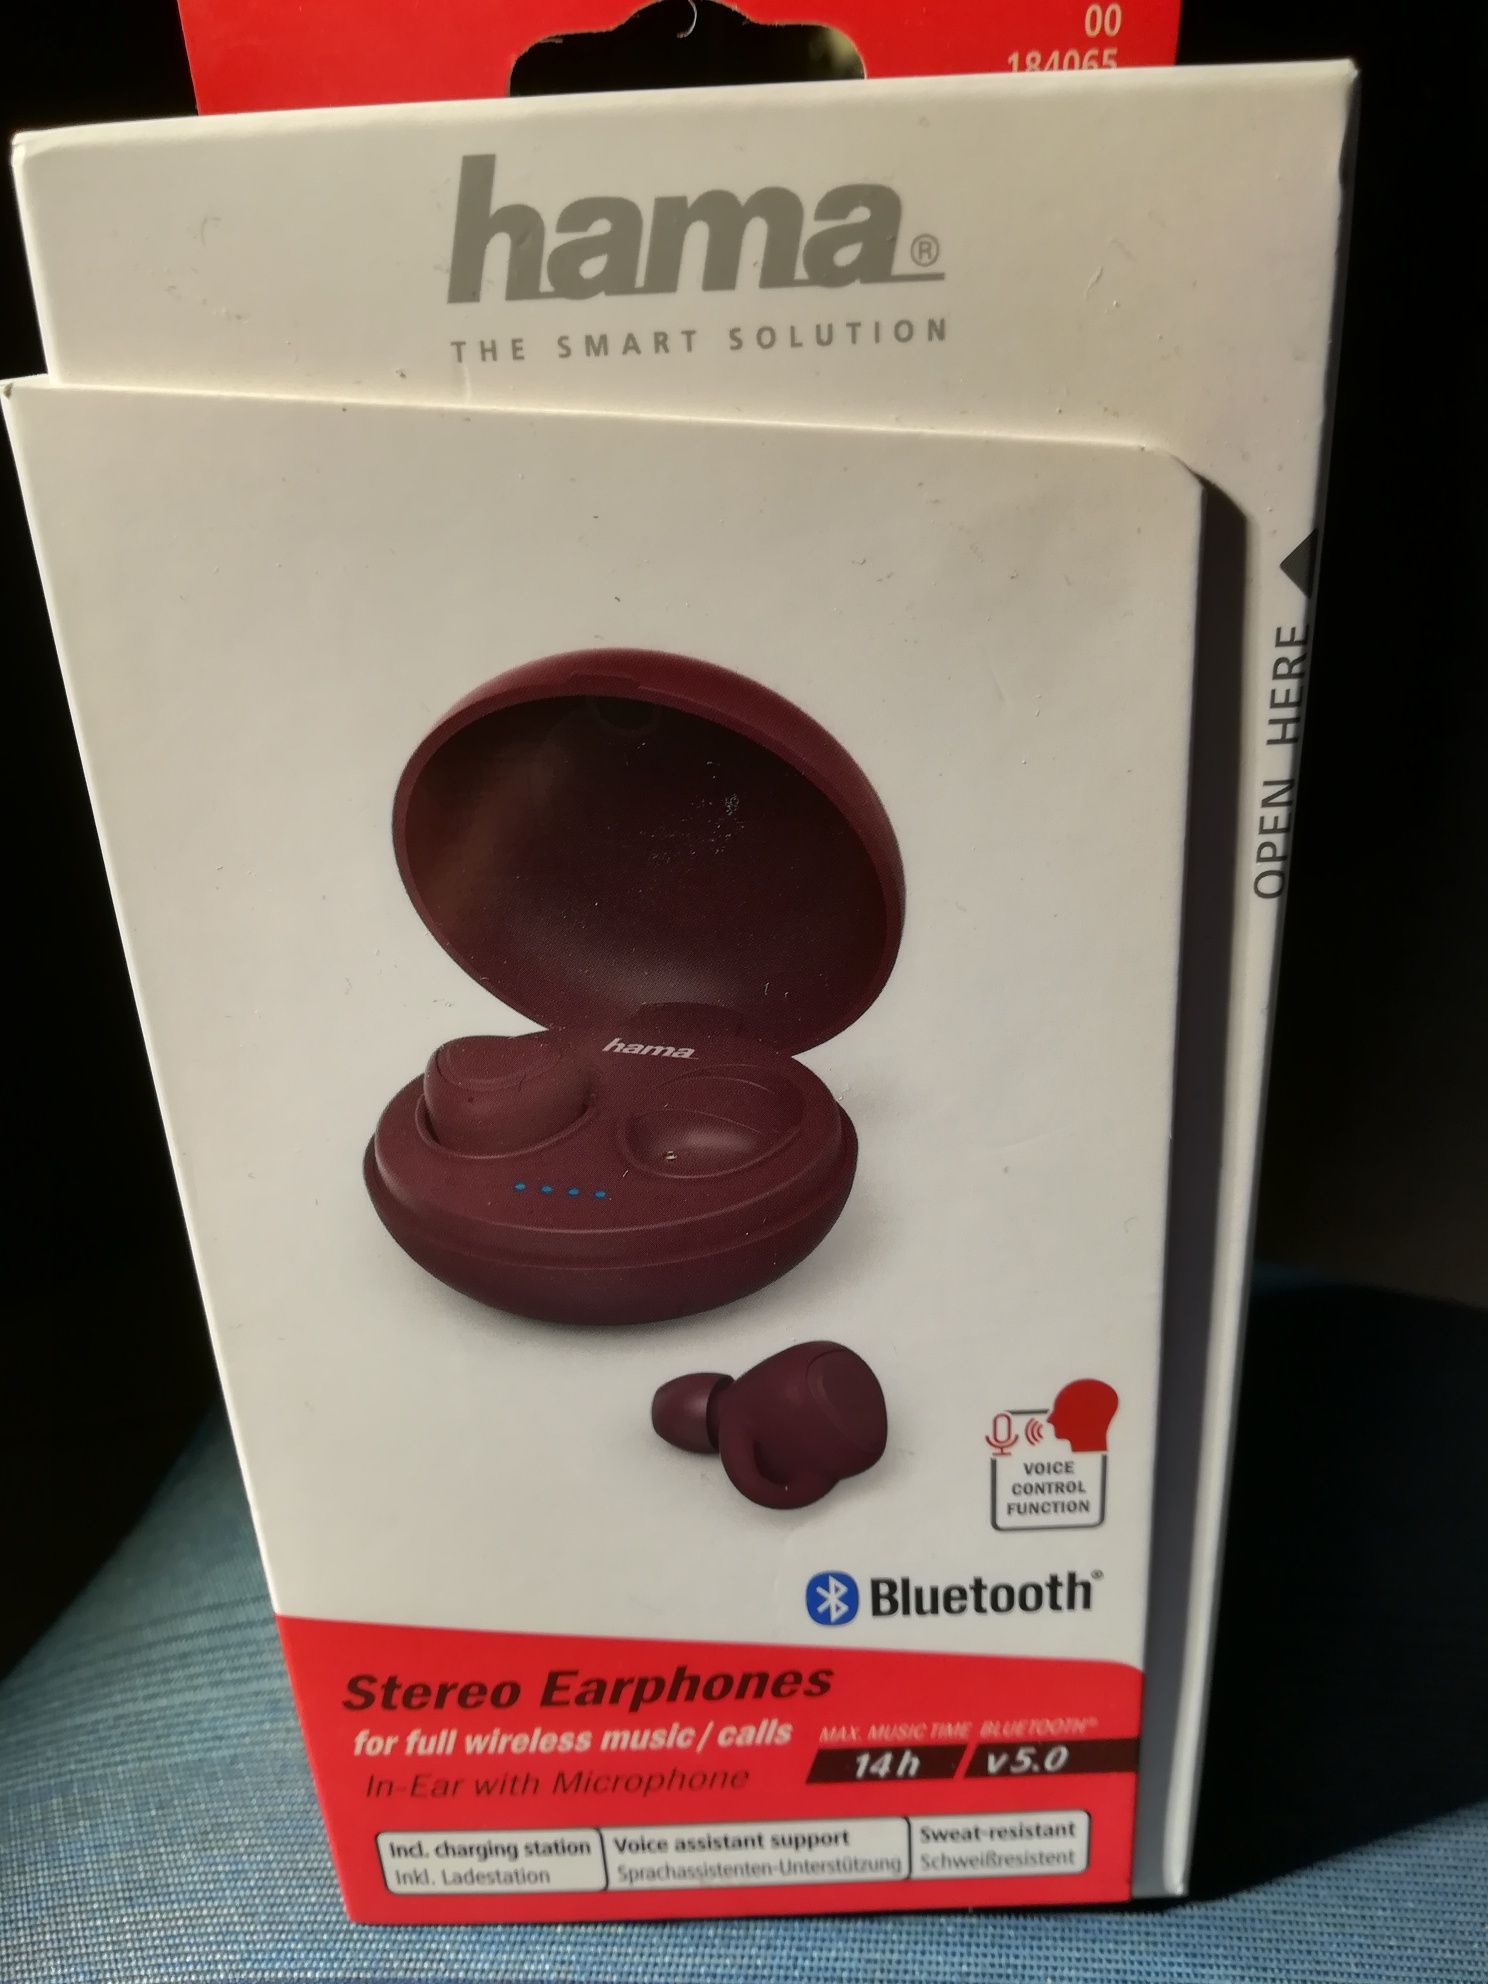 Auriculares Bluetooth Hama Liberobuds. NOVO